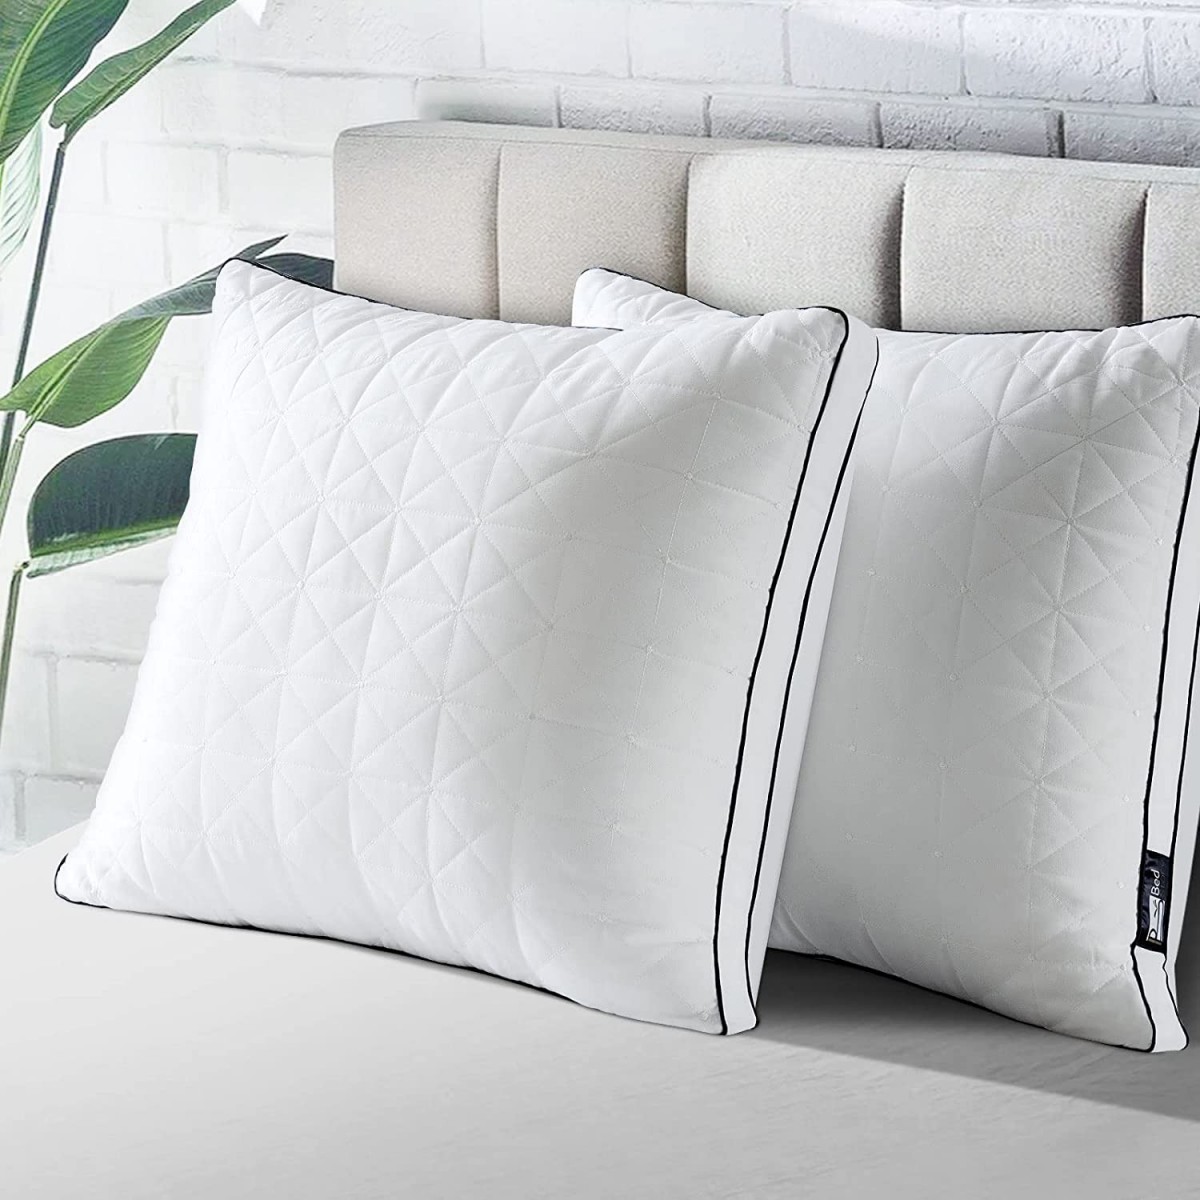 Literie : Lot de 2 oreillers relaxants 60X60 cm à prix imbattable